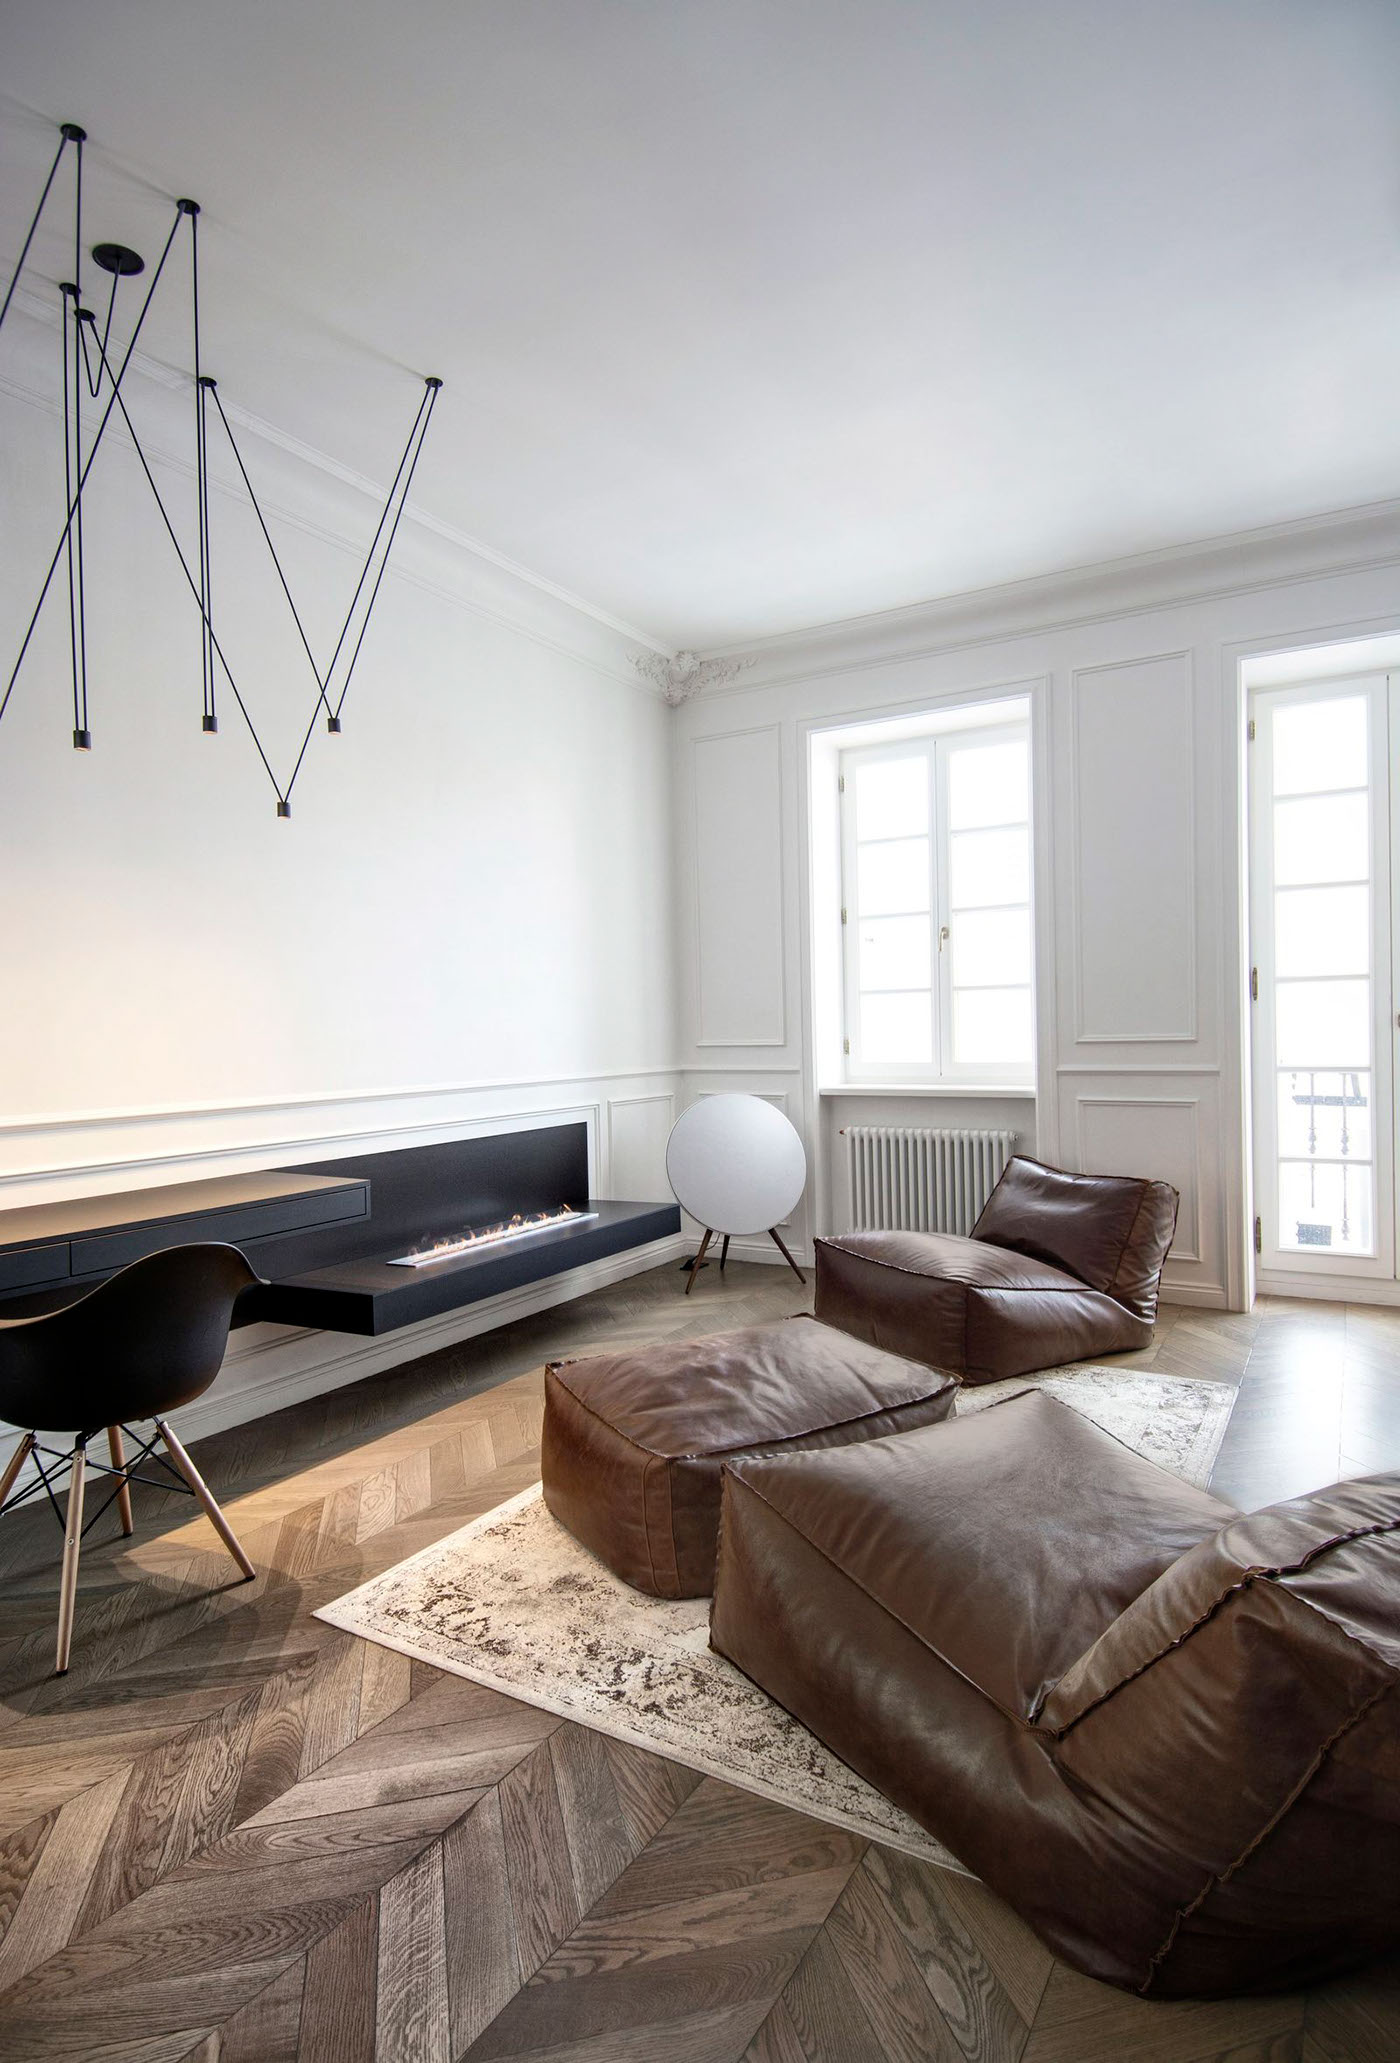 interior design  Black&white minimalist interior moscow studio apartment design int2 int2architecture